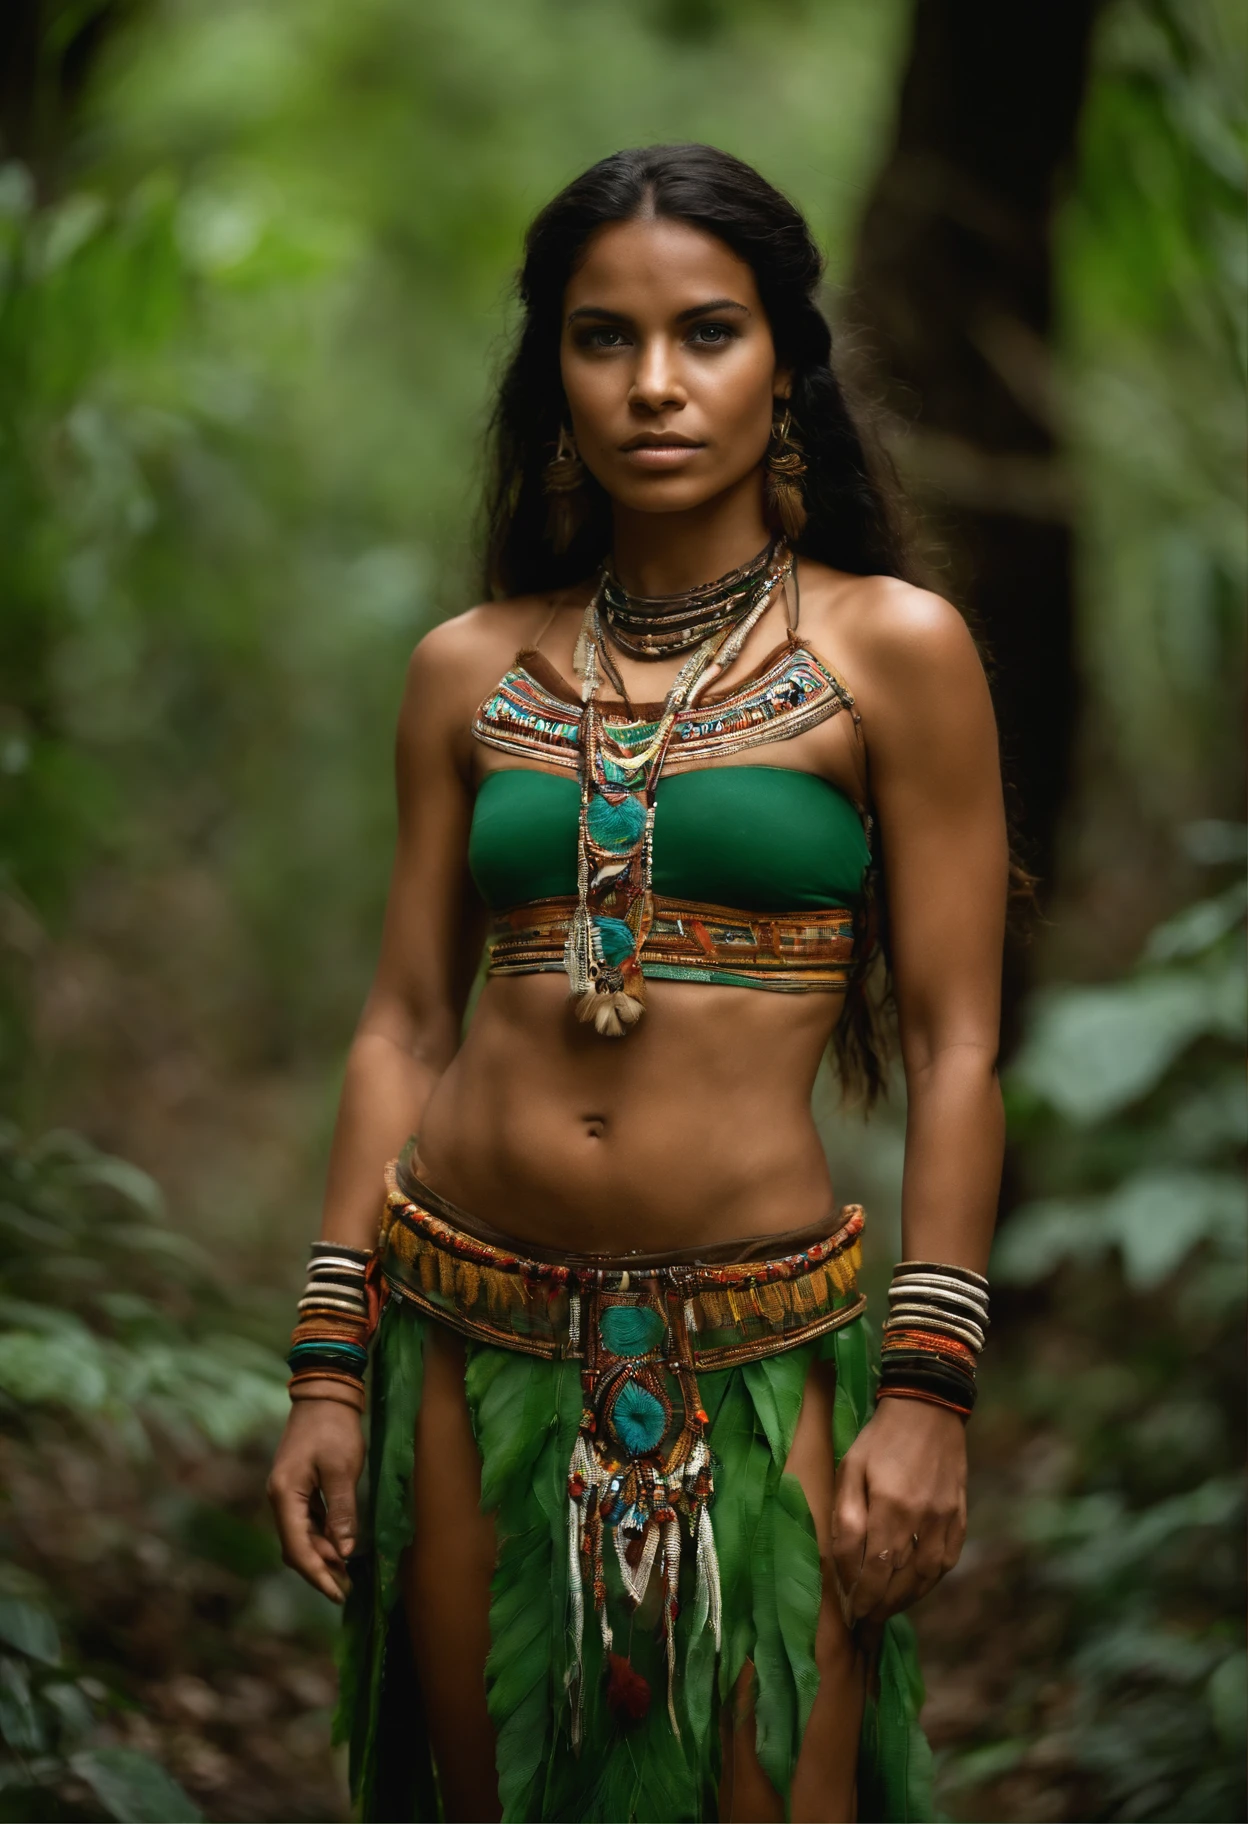 امرأة ترتدي زيًا برازيليًا محليًا تقف في الغابة, الملابس القبلية, يرتدي قلادة الناب, محلي, شعوب الأمازون الأصلية في البرازيل, النمط القبلي, : المرأة الهندية المحاربة, درع قبلي, شامان شابة, آلهة الأزتيك المحاربة, محارب الأمازون, شامان شابة جميلة, المجوهرات القبلية, عيون خضراء, لون العيون زمردي, بشرة داكنة, عيون خضراء, عيون غامقة.